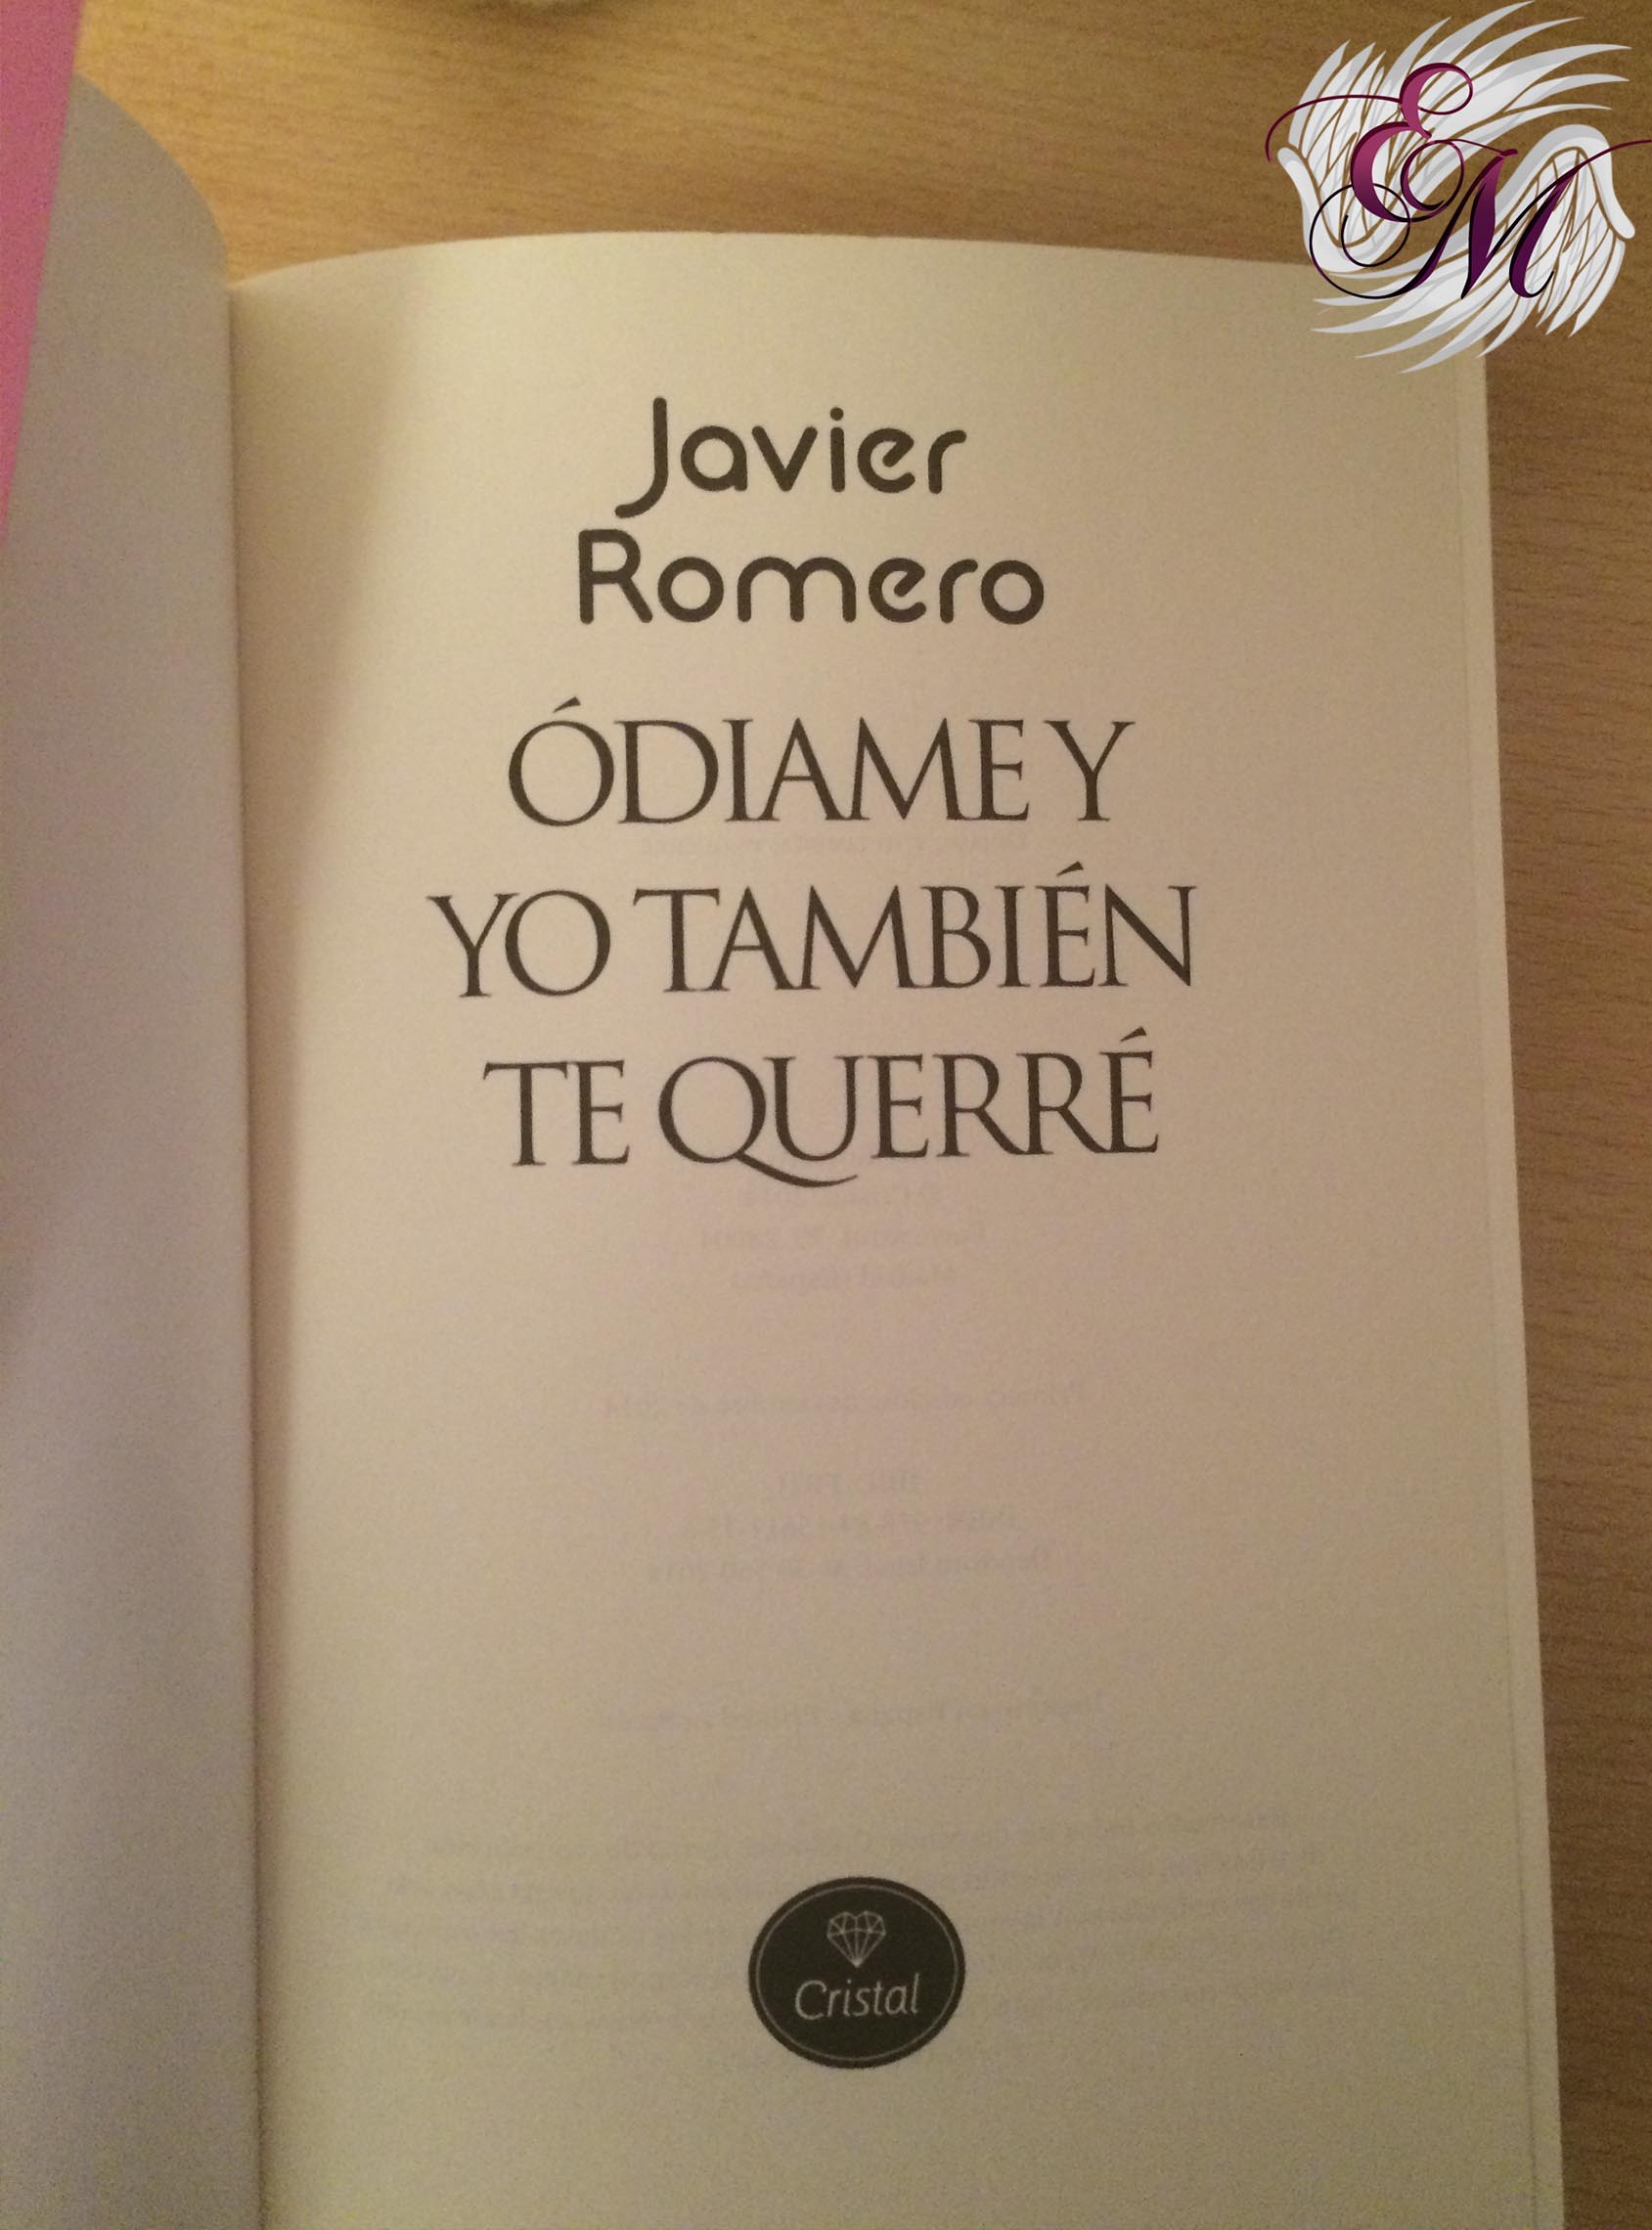 Ódiame y yo también te querré, de Javier Romero - Reseña